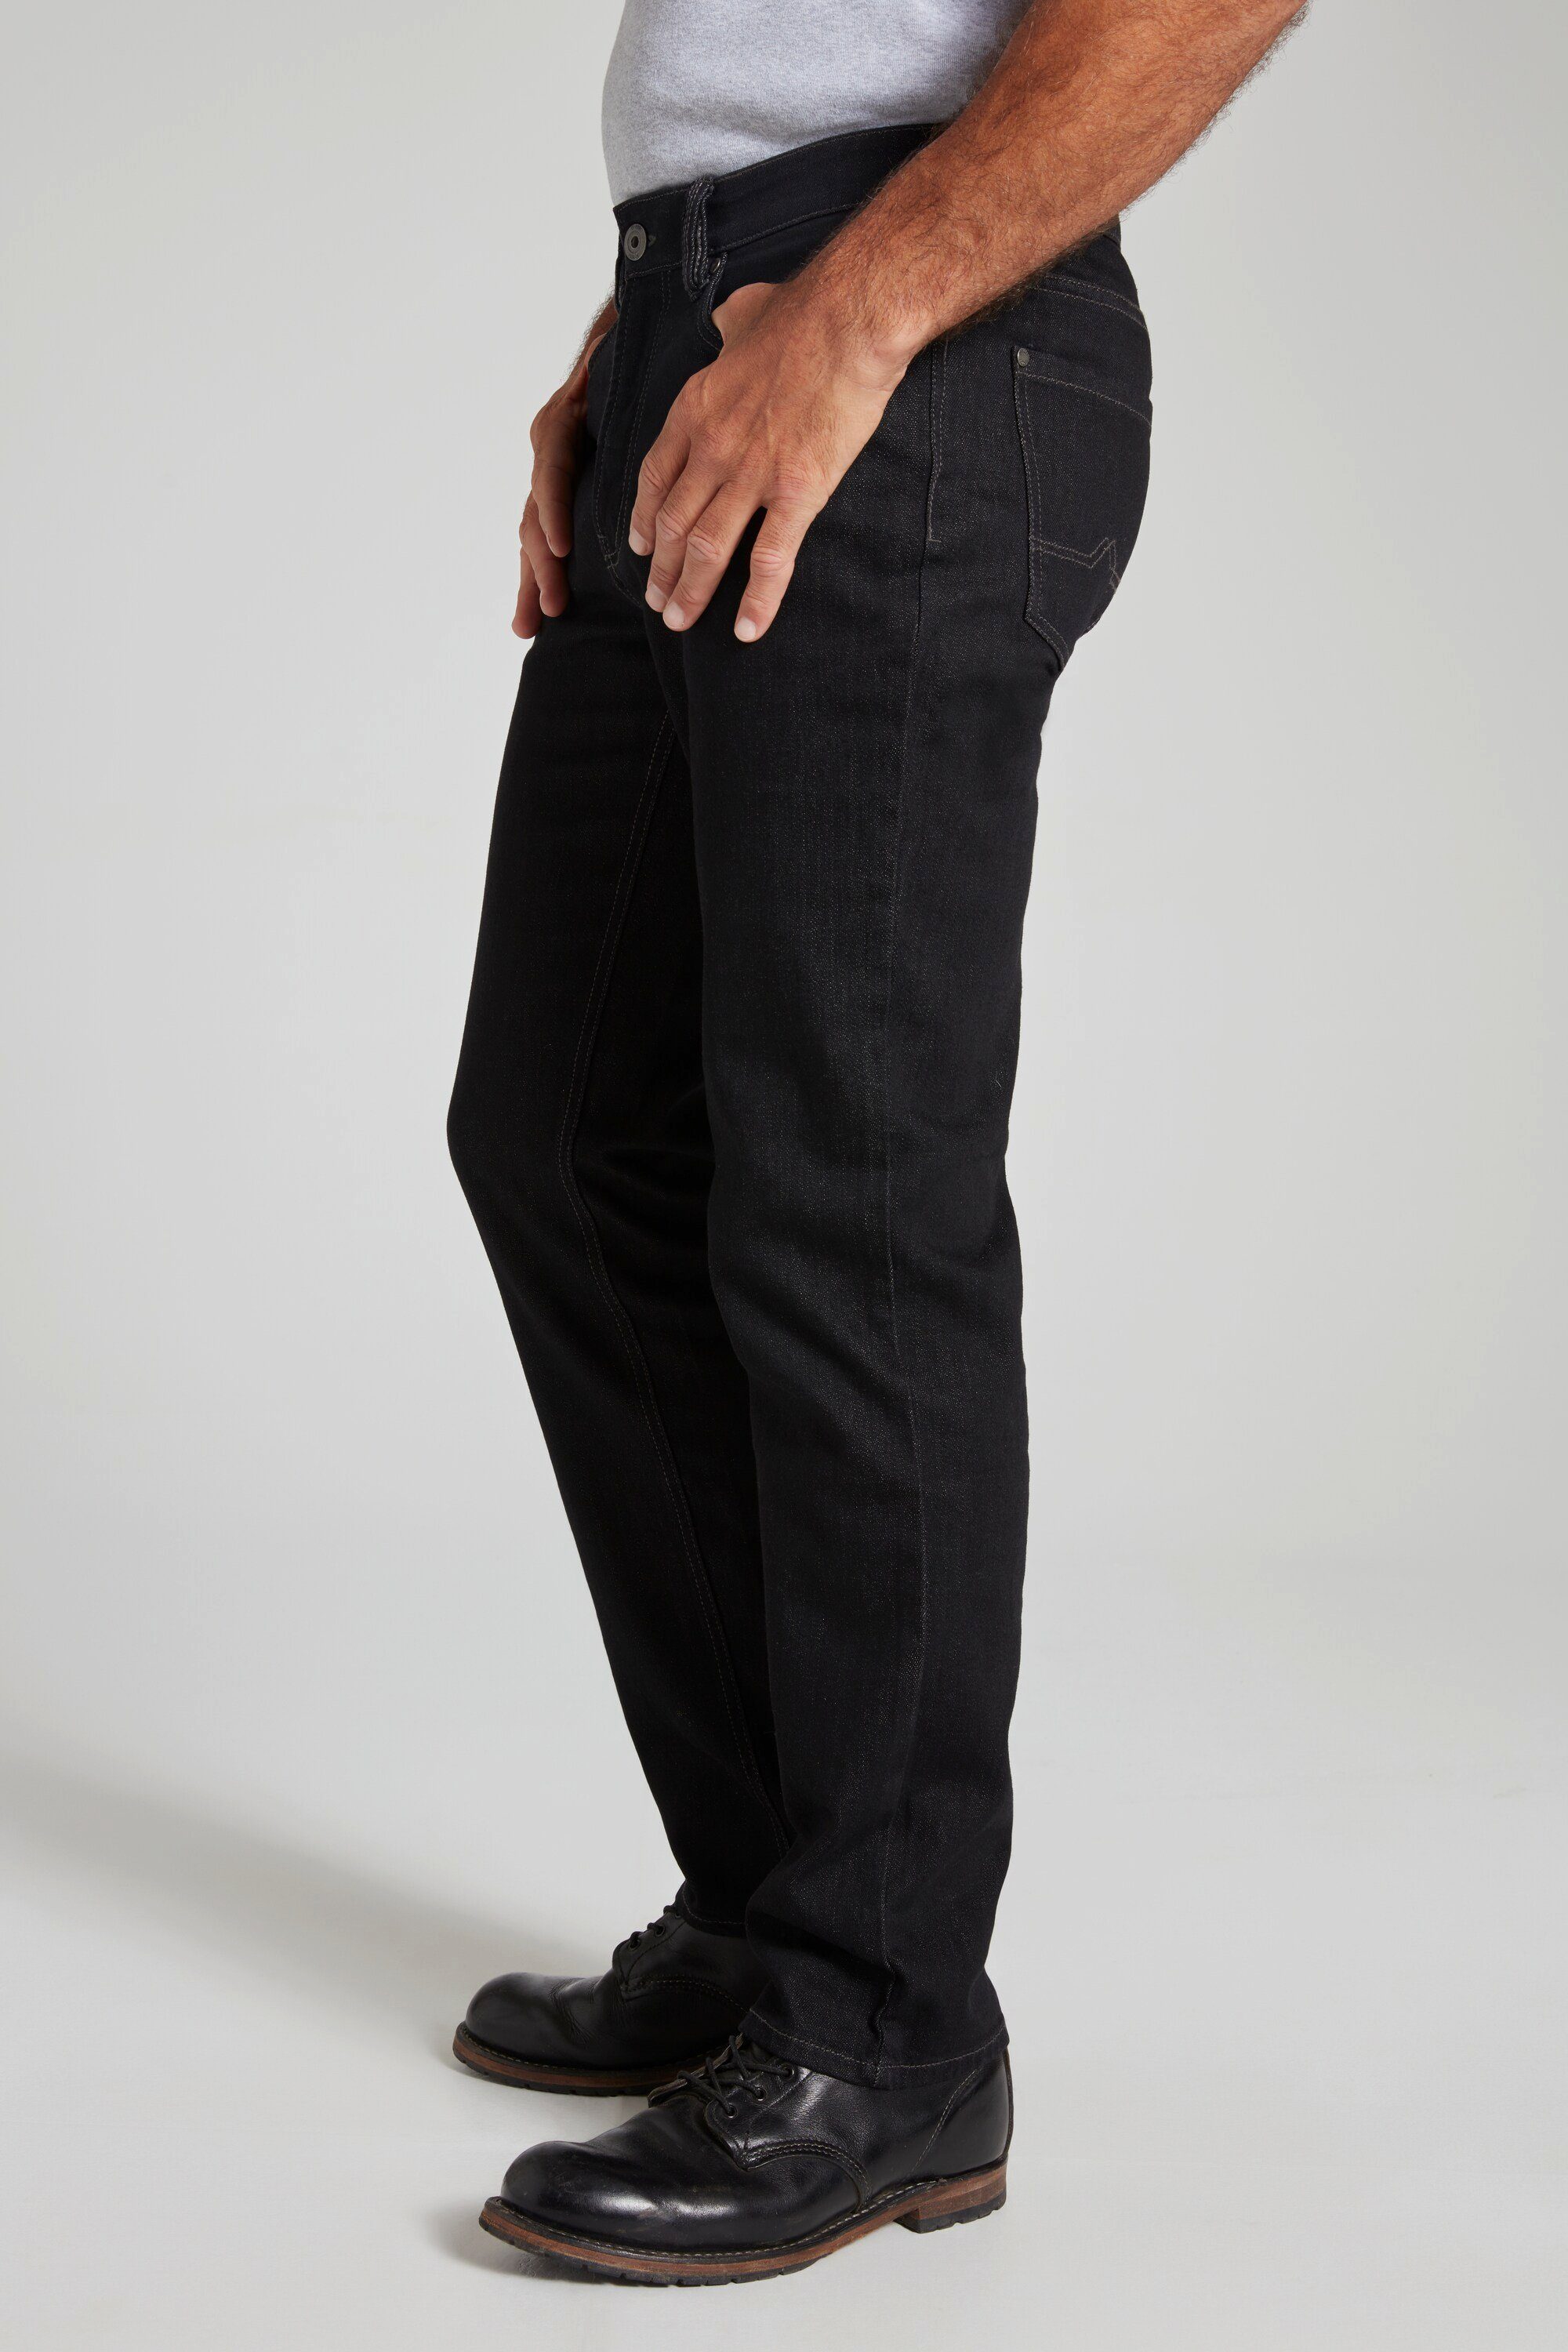 Dehnbund 5-Pocket Regular Fit Jeans Cargohose Denim-Stretch black JP1880